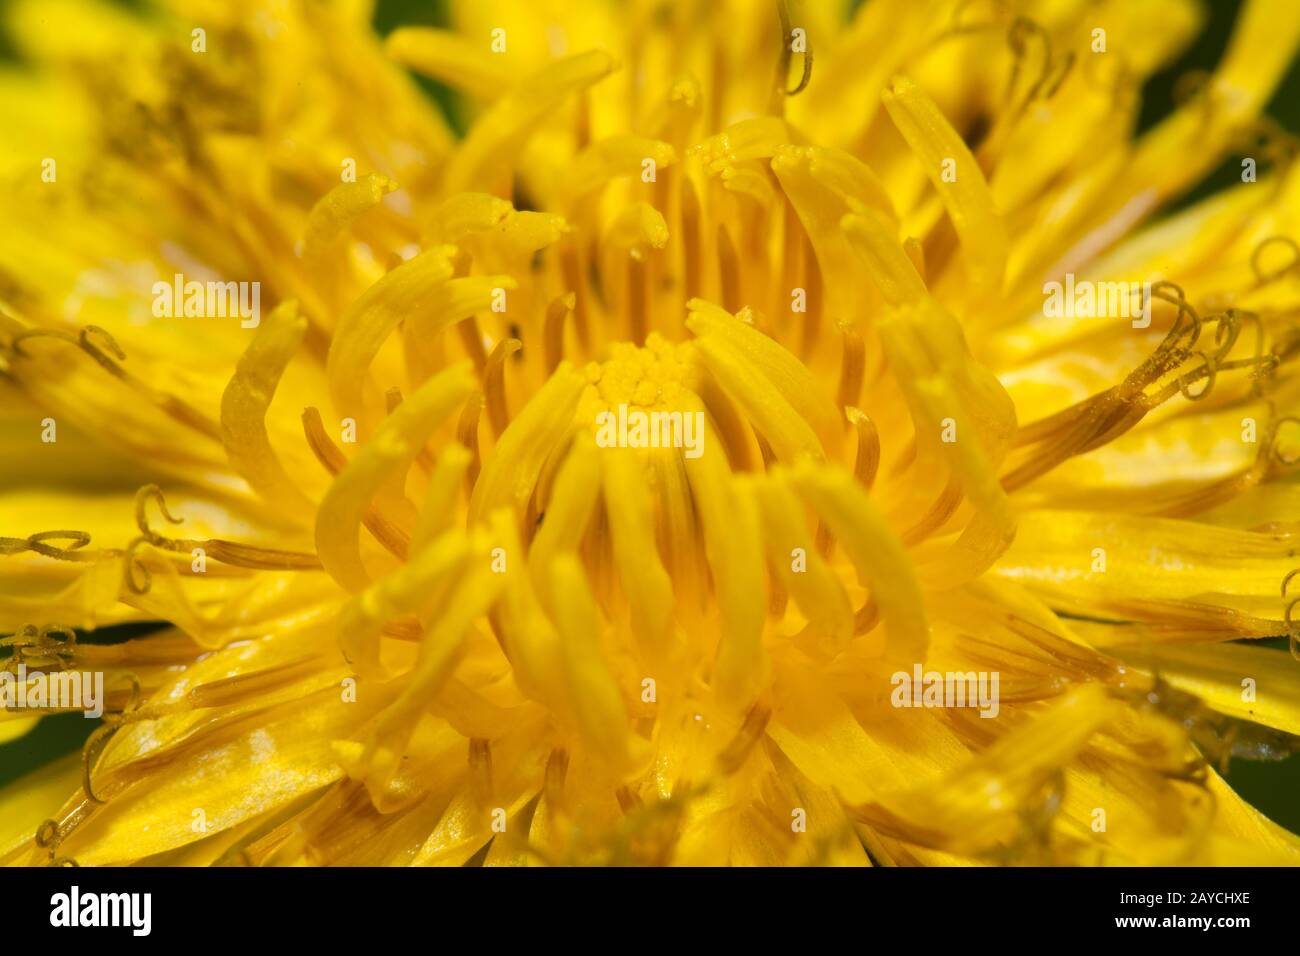 Gros plan de la fleur de Dandelion, à un angle tourné, fleur jaune intense Banque D'Images